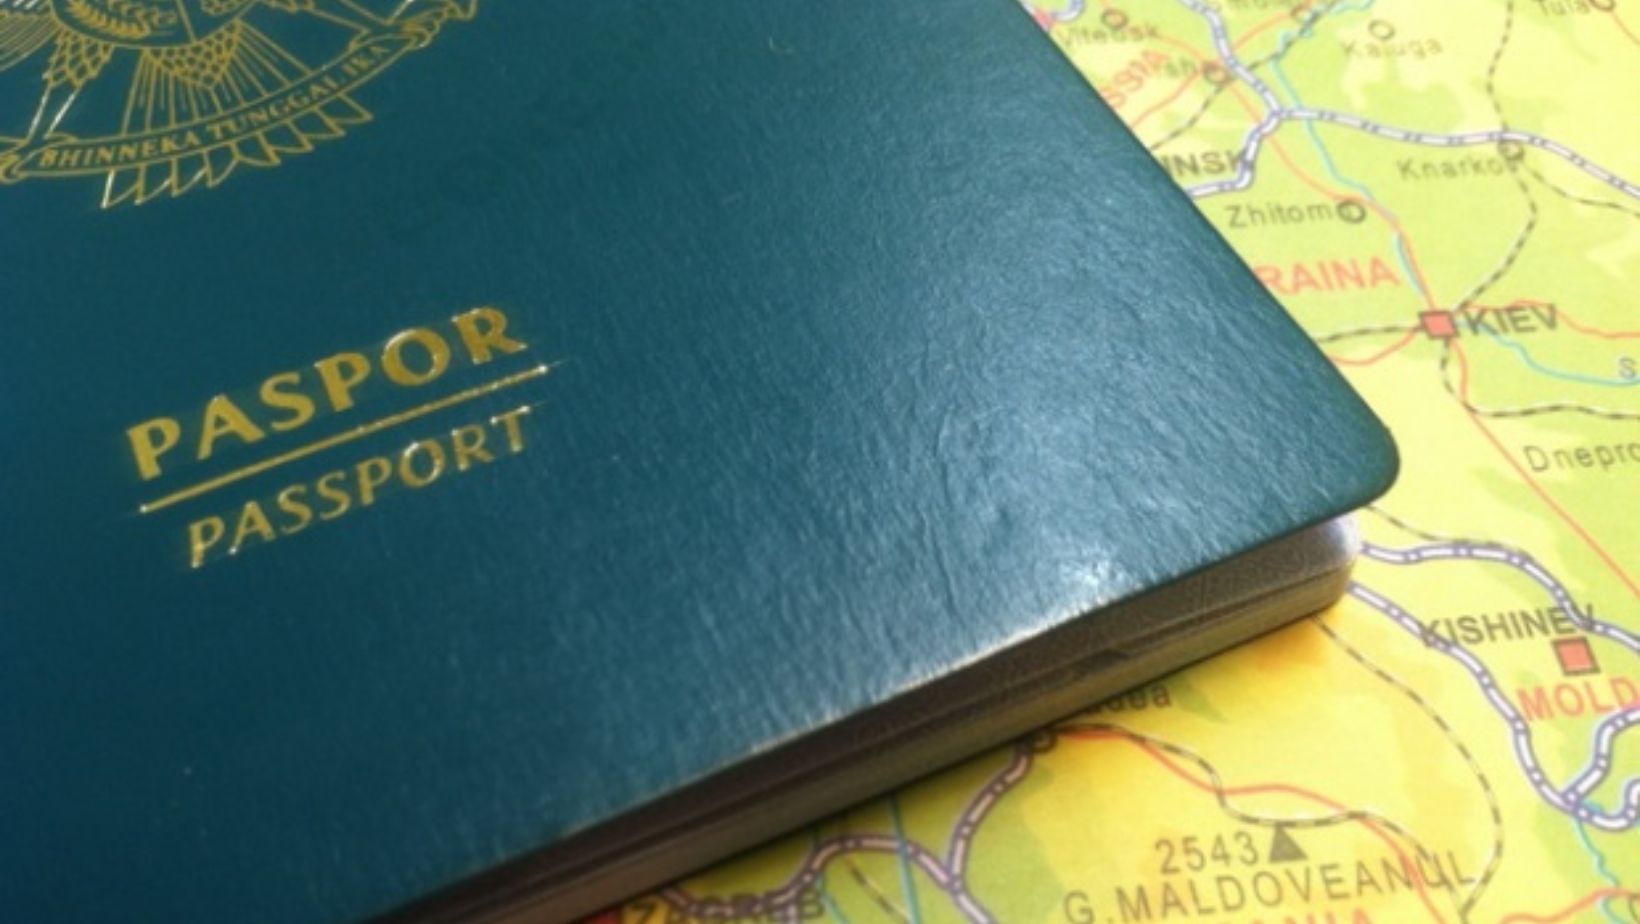 Paspor adalah kunci untuk menjelajahi dunia. Pastikan paspor Anda aman dari kerusakan